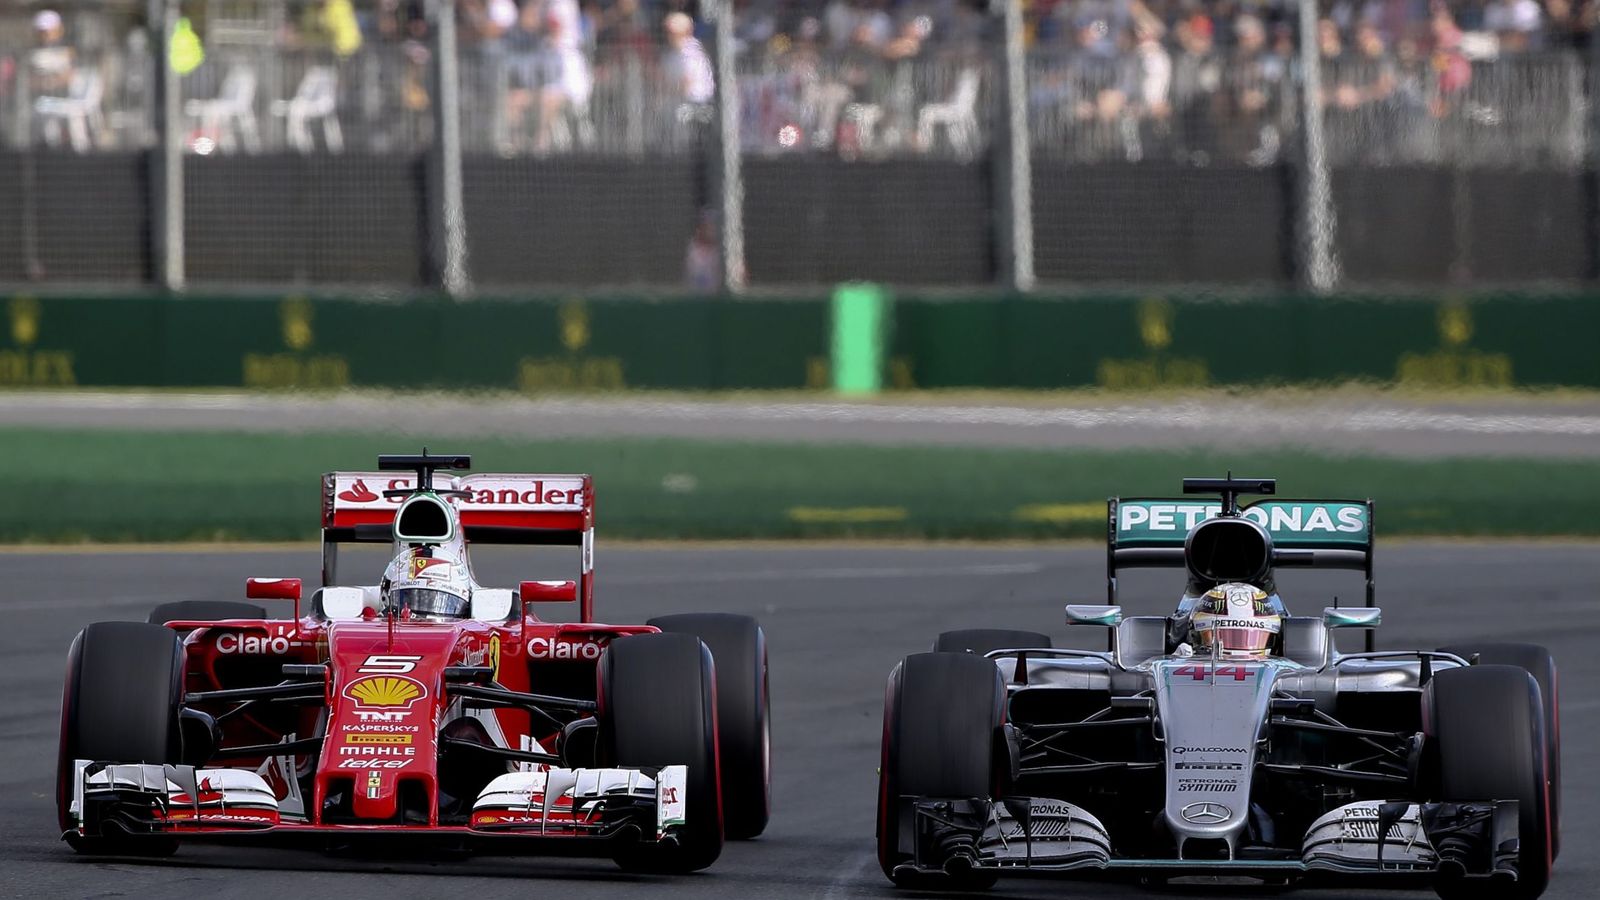 Foto: En Australia, Vettel acabó tercero por detrás de los dos Mercedes (Diego Azubel/EFE/EPA)